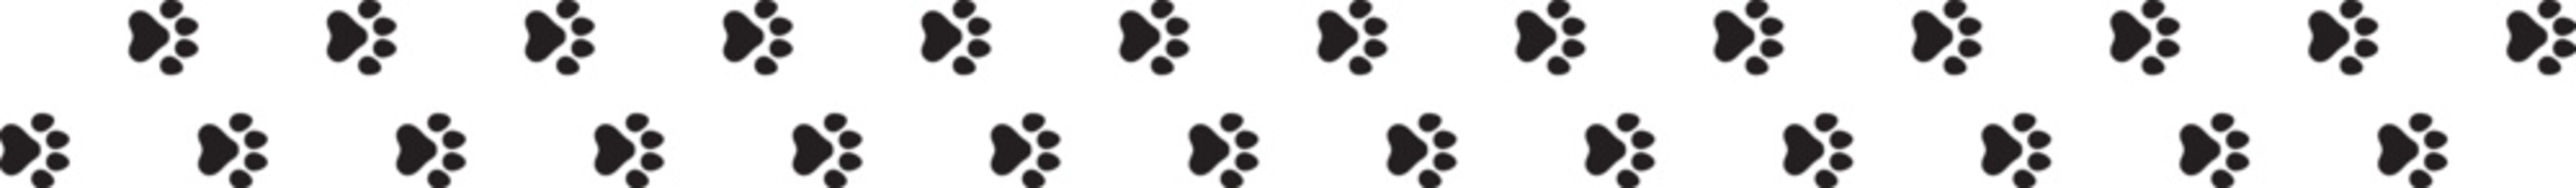 犬の足跡のアイコンのパターン	